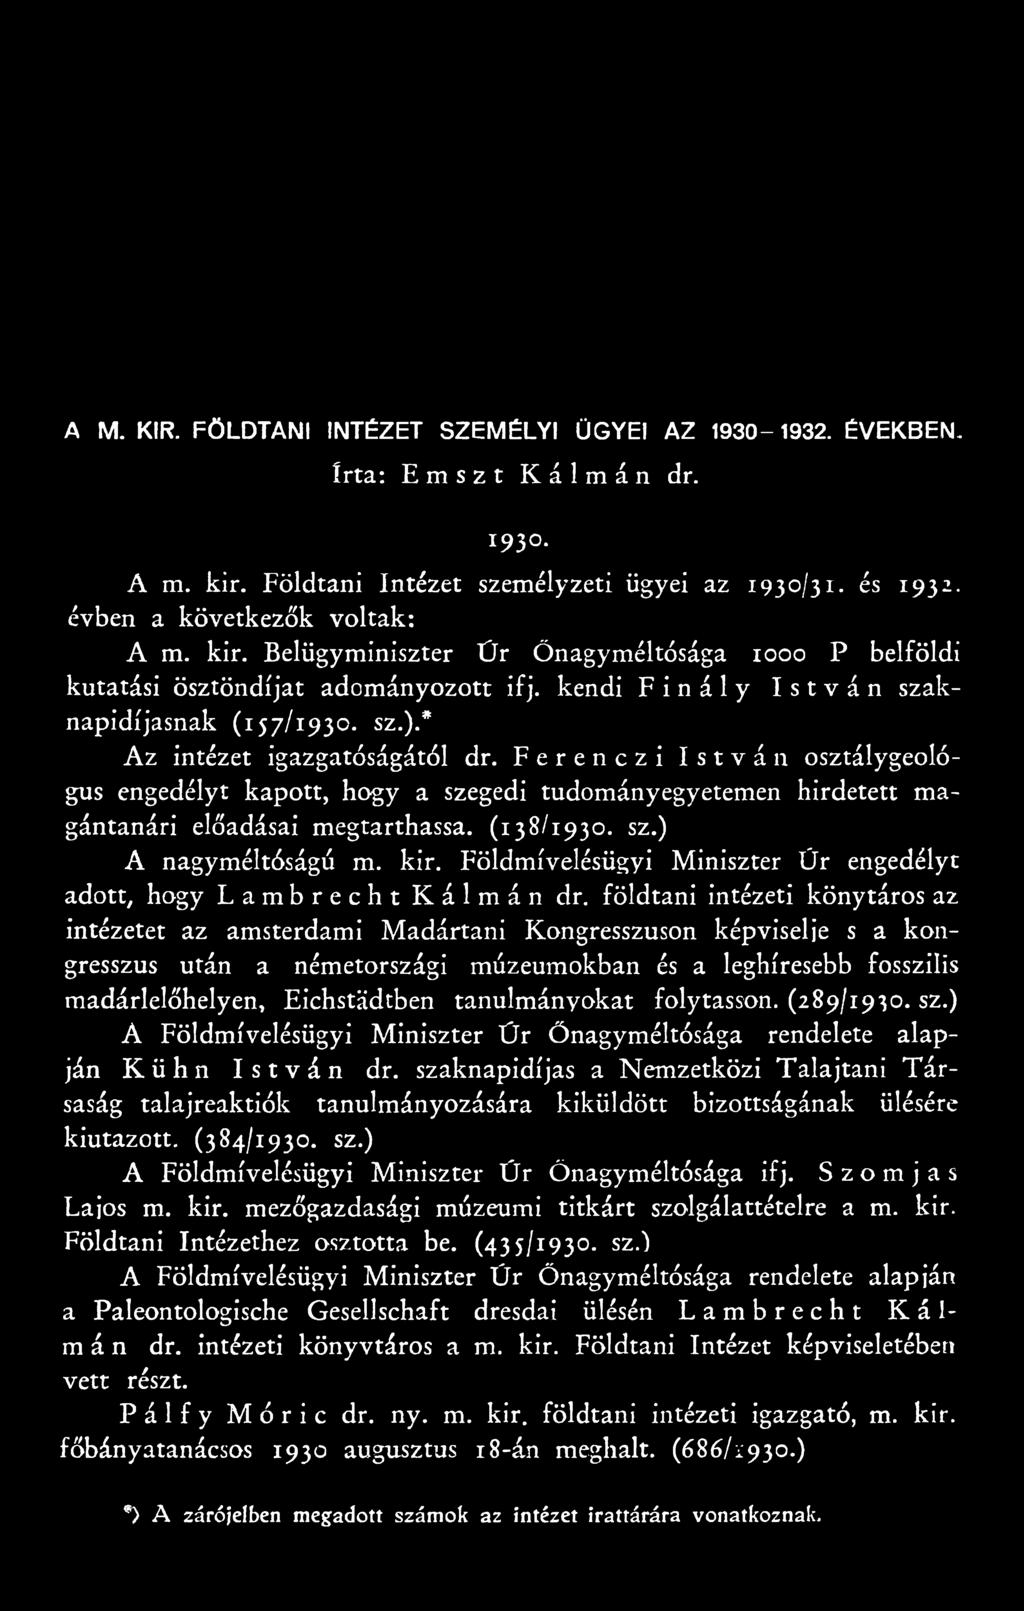 Ferenczi István osztálygeológus engedélyt kapott, hogy a szegedi tudományegyetemen hirdetett magántanári előadásai megtarthassa. (138/1930. sz.) A nagyméltóságú m. kir.